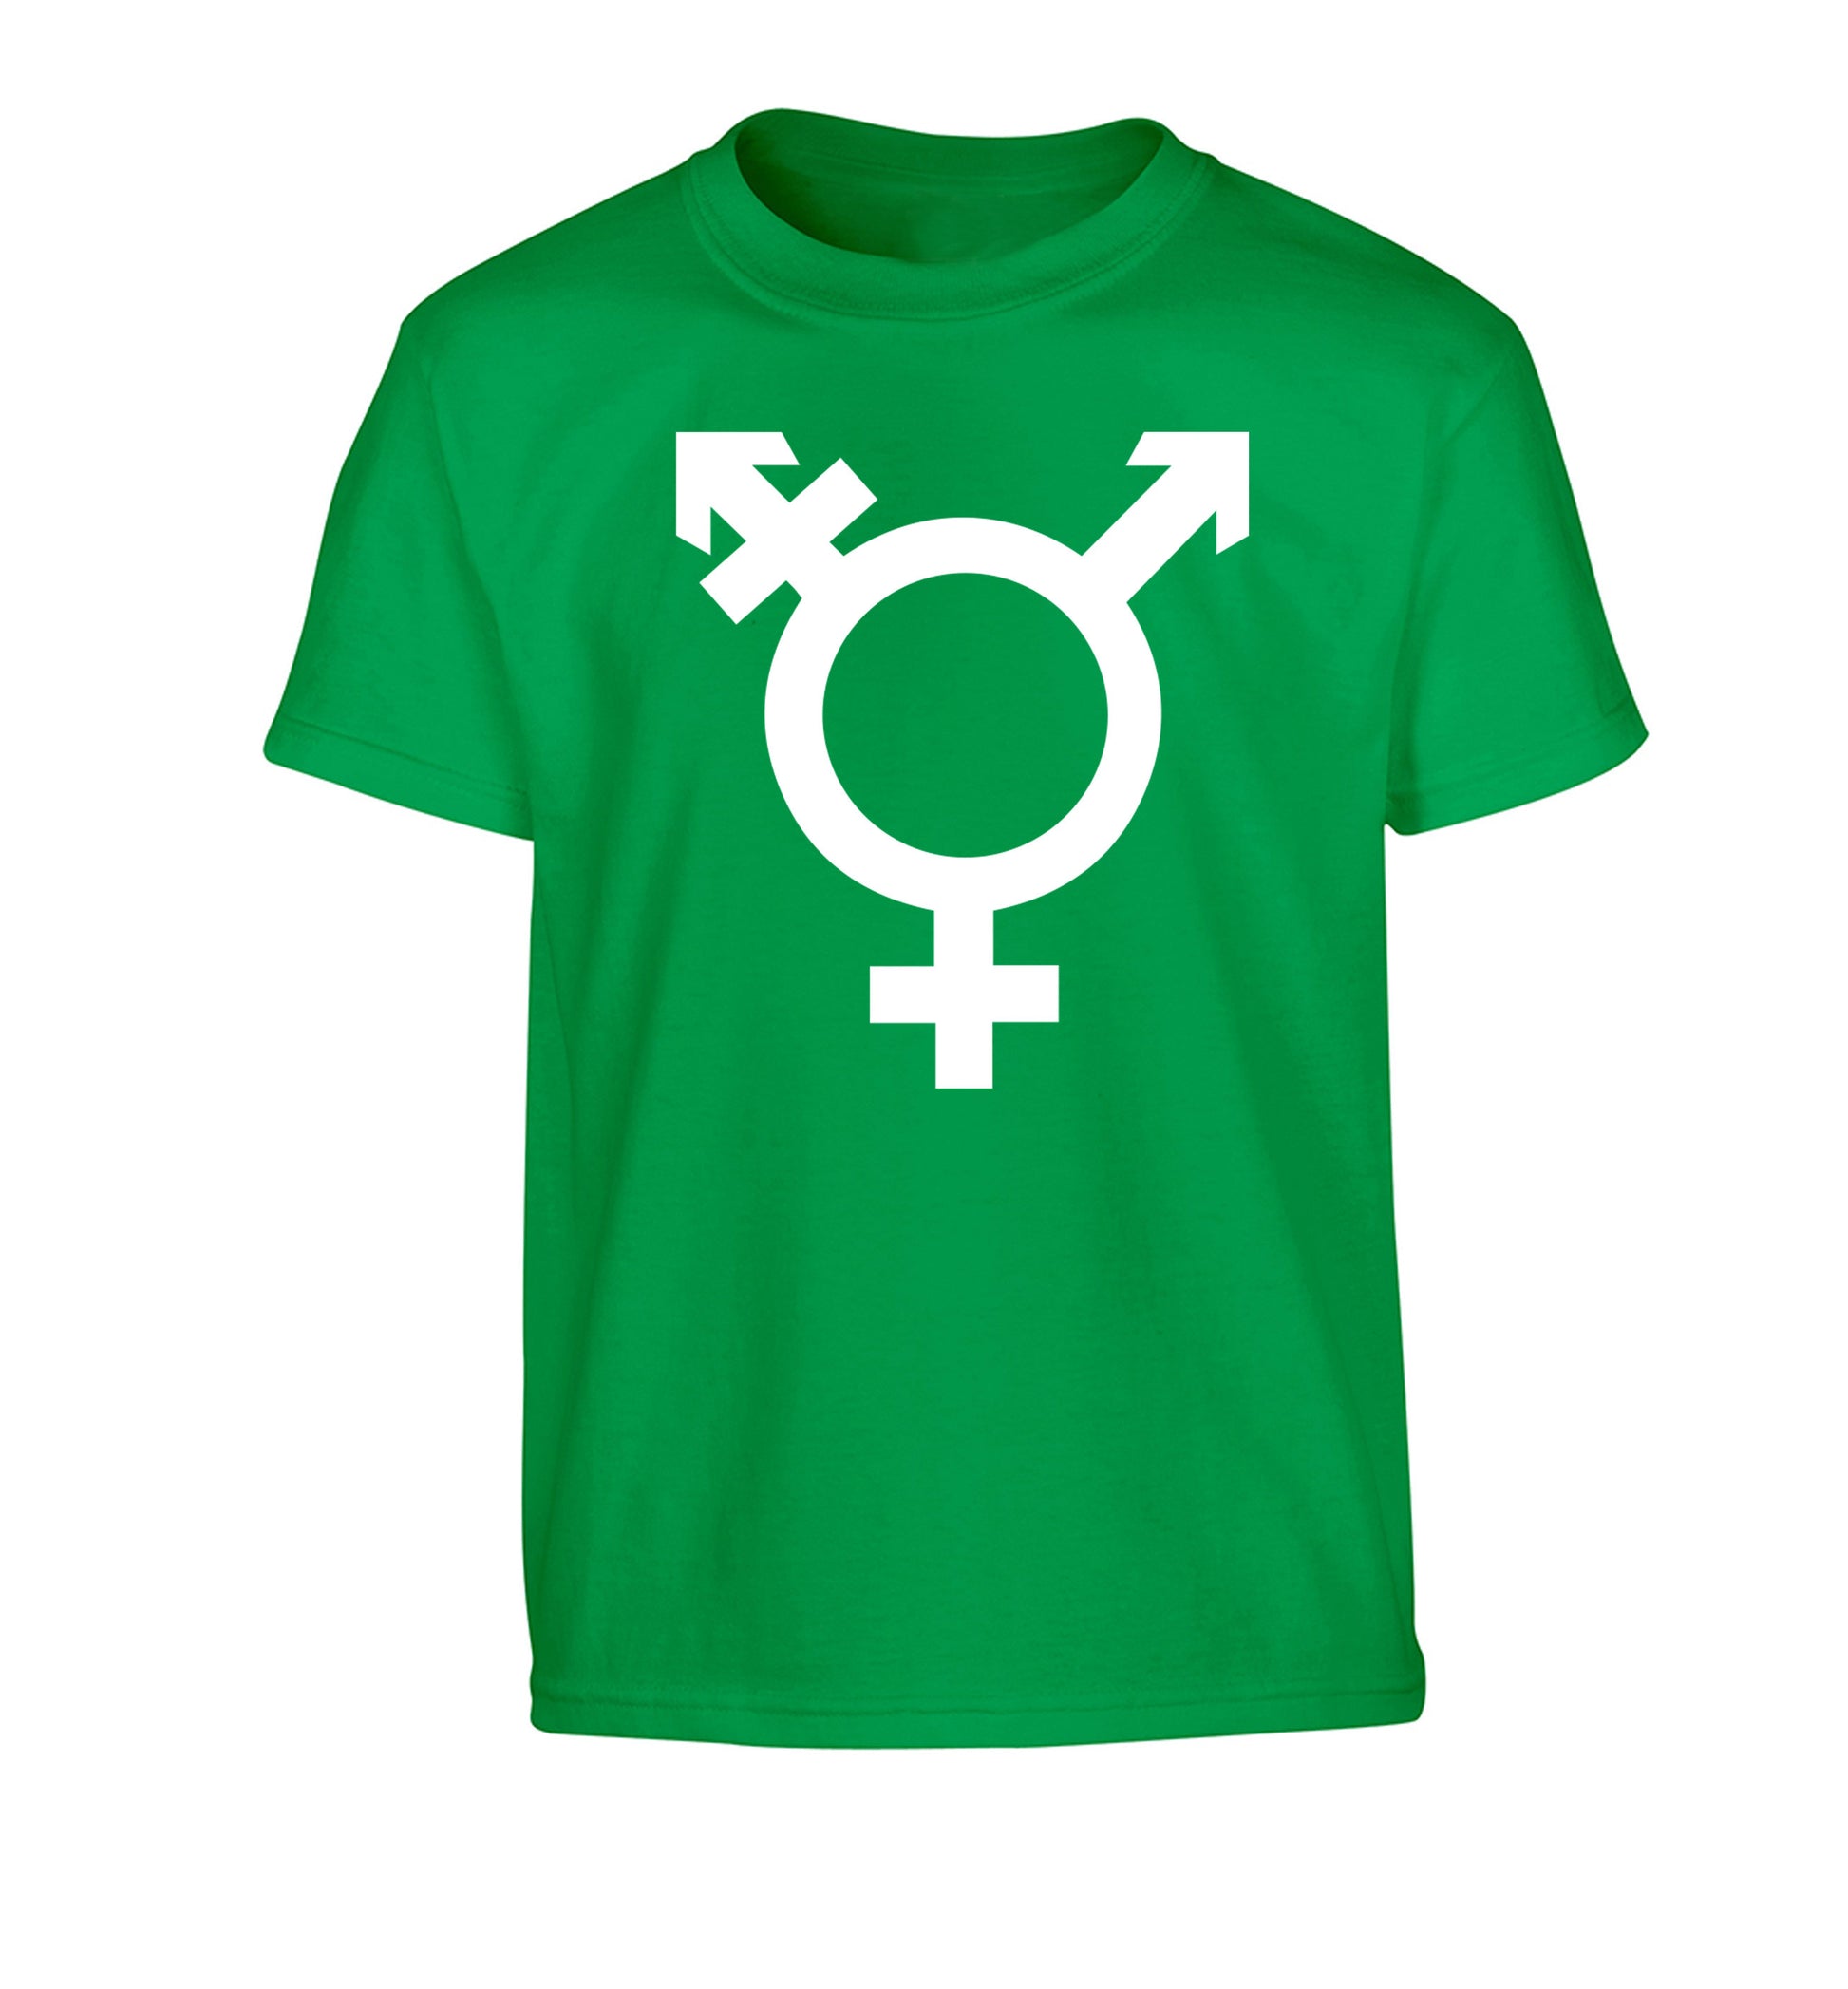 Gender neutral symbol large Children's green Tshirt 12-14 Years